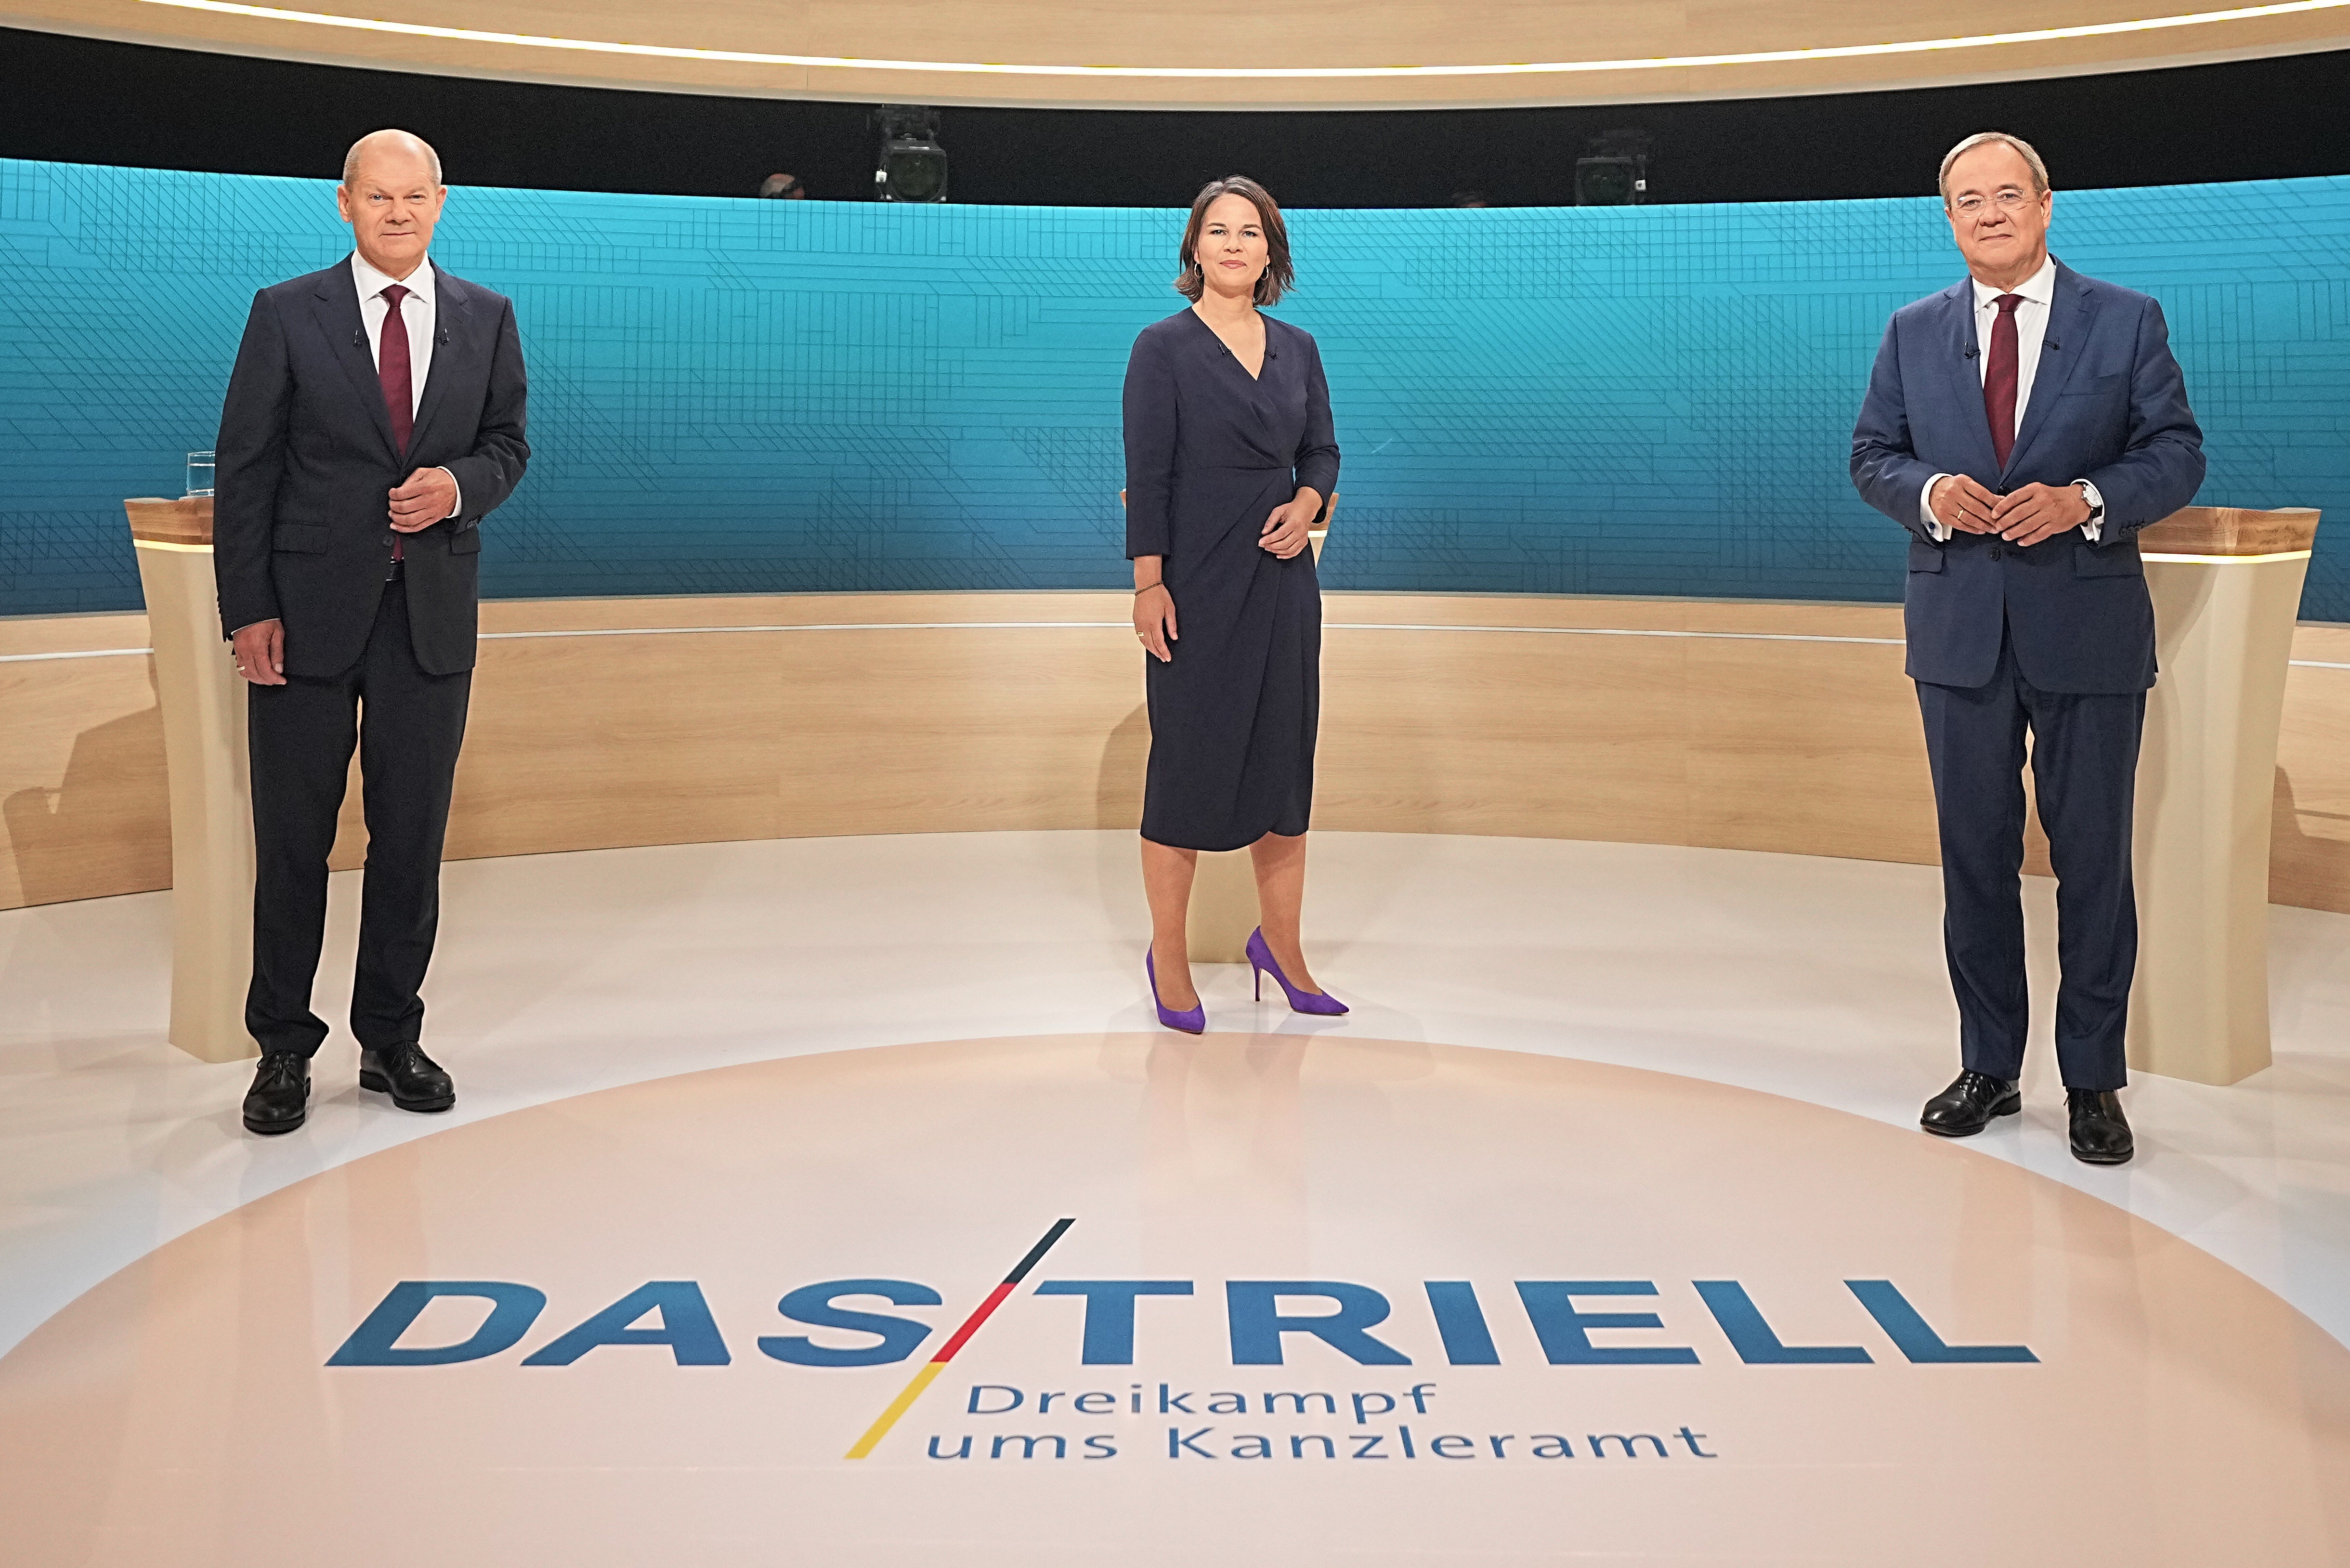 候选人电视辩论在首都柏林举行,肖尔茨(左),贝尔伯克(中)和拉舍特参加